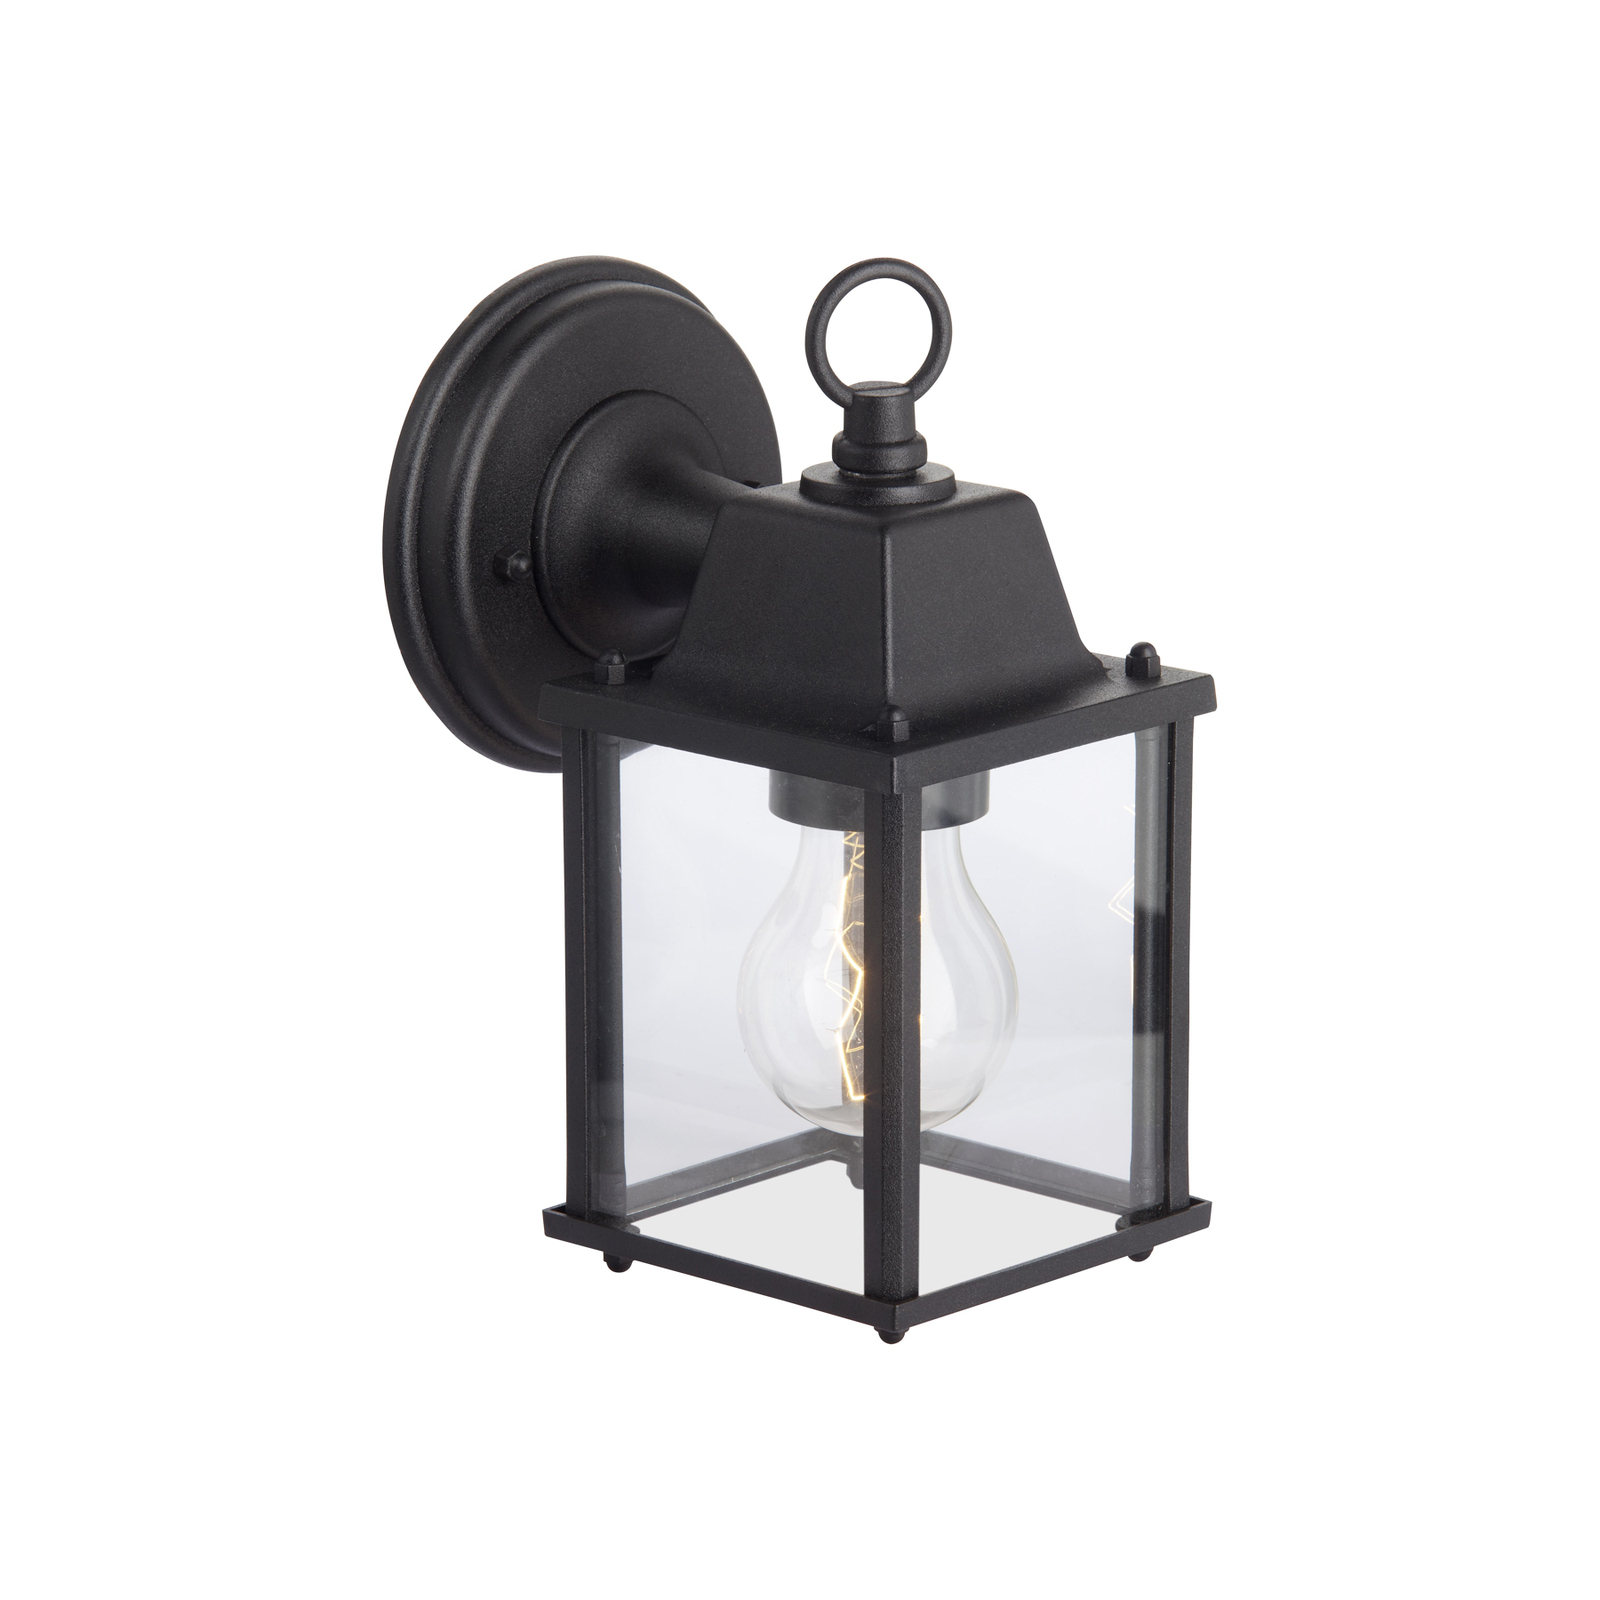 Vonkajšie nástenné svietidlo Irvin, výška 22 cm, čierna farba, kov/sklo